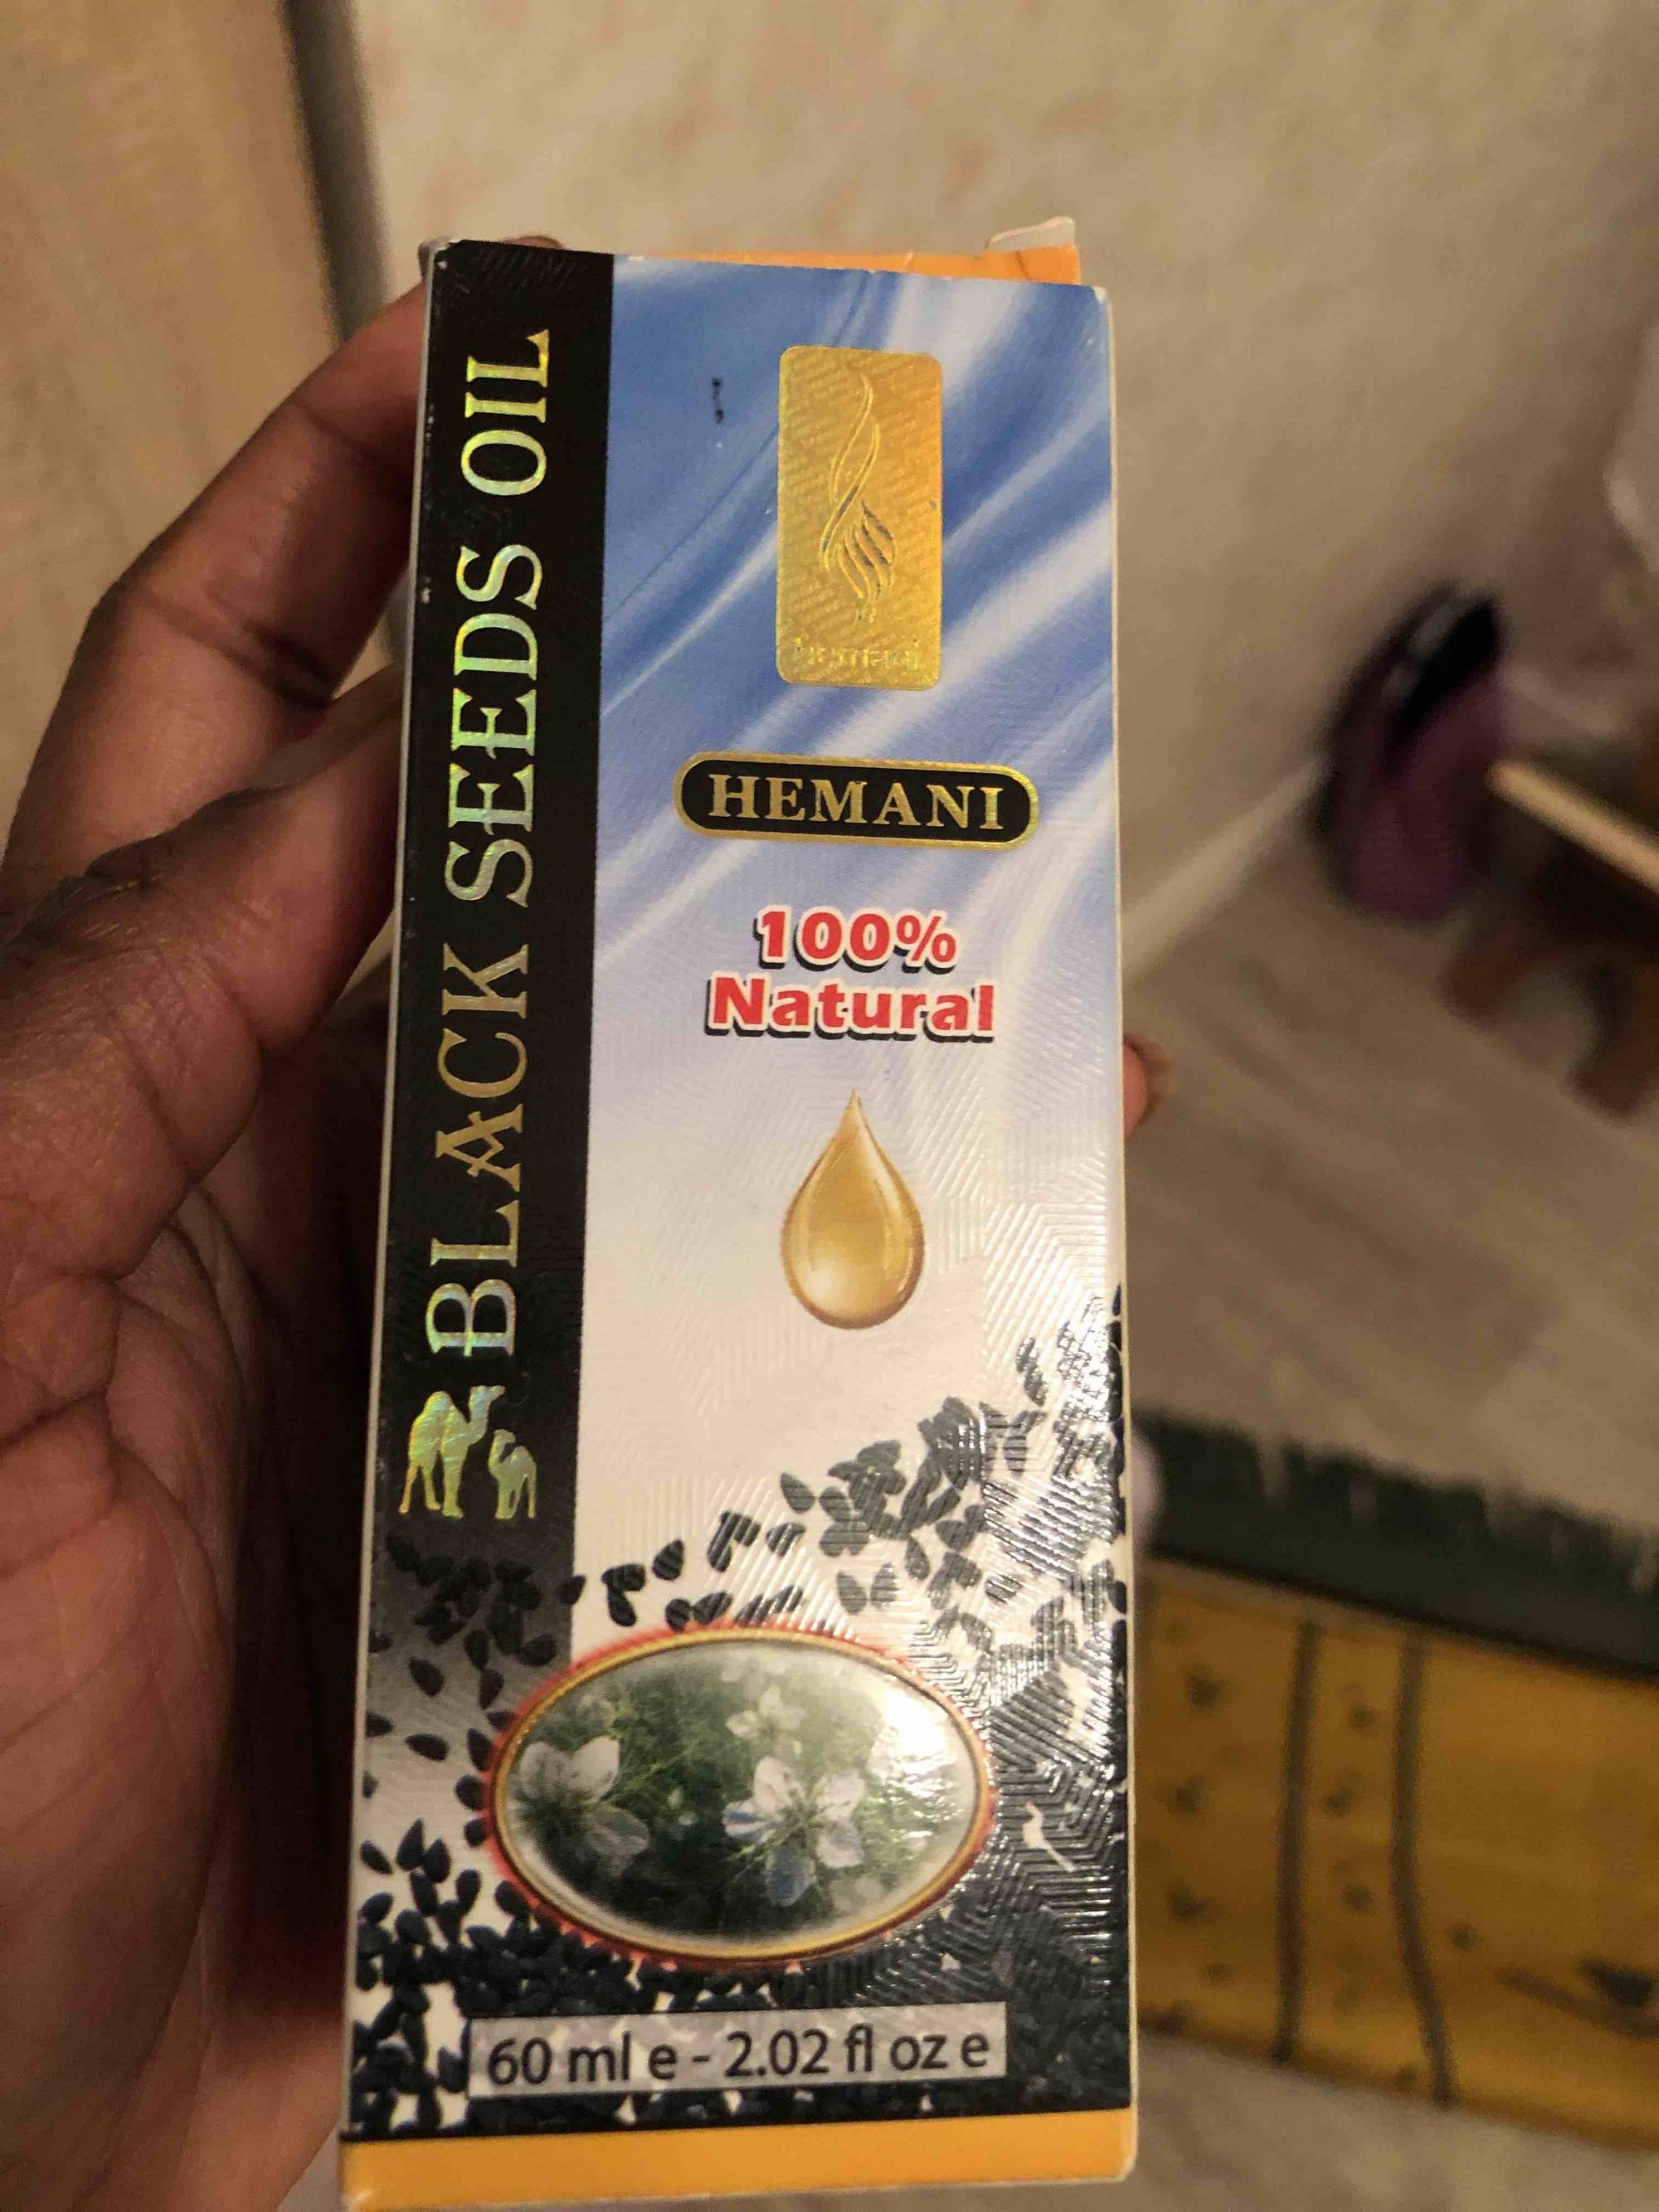 HEMANI - Black seeds oil 